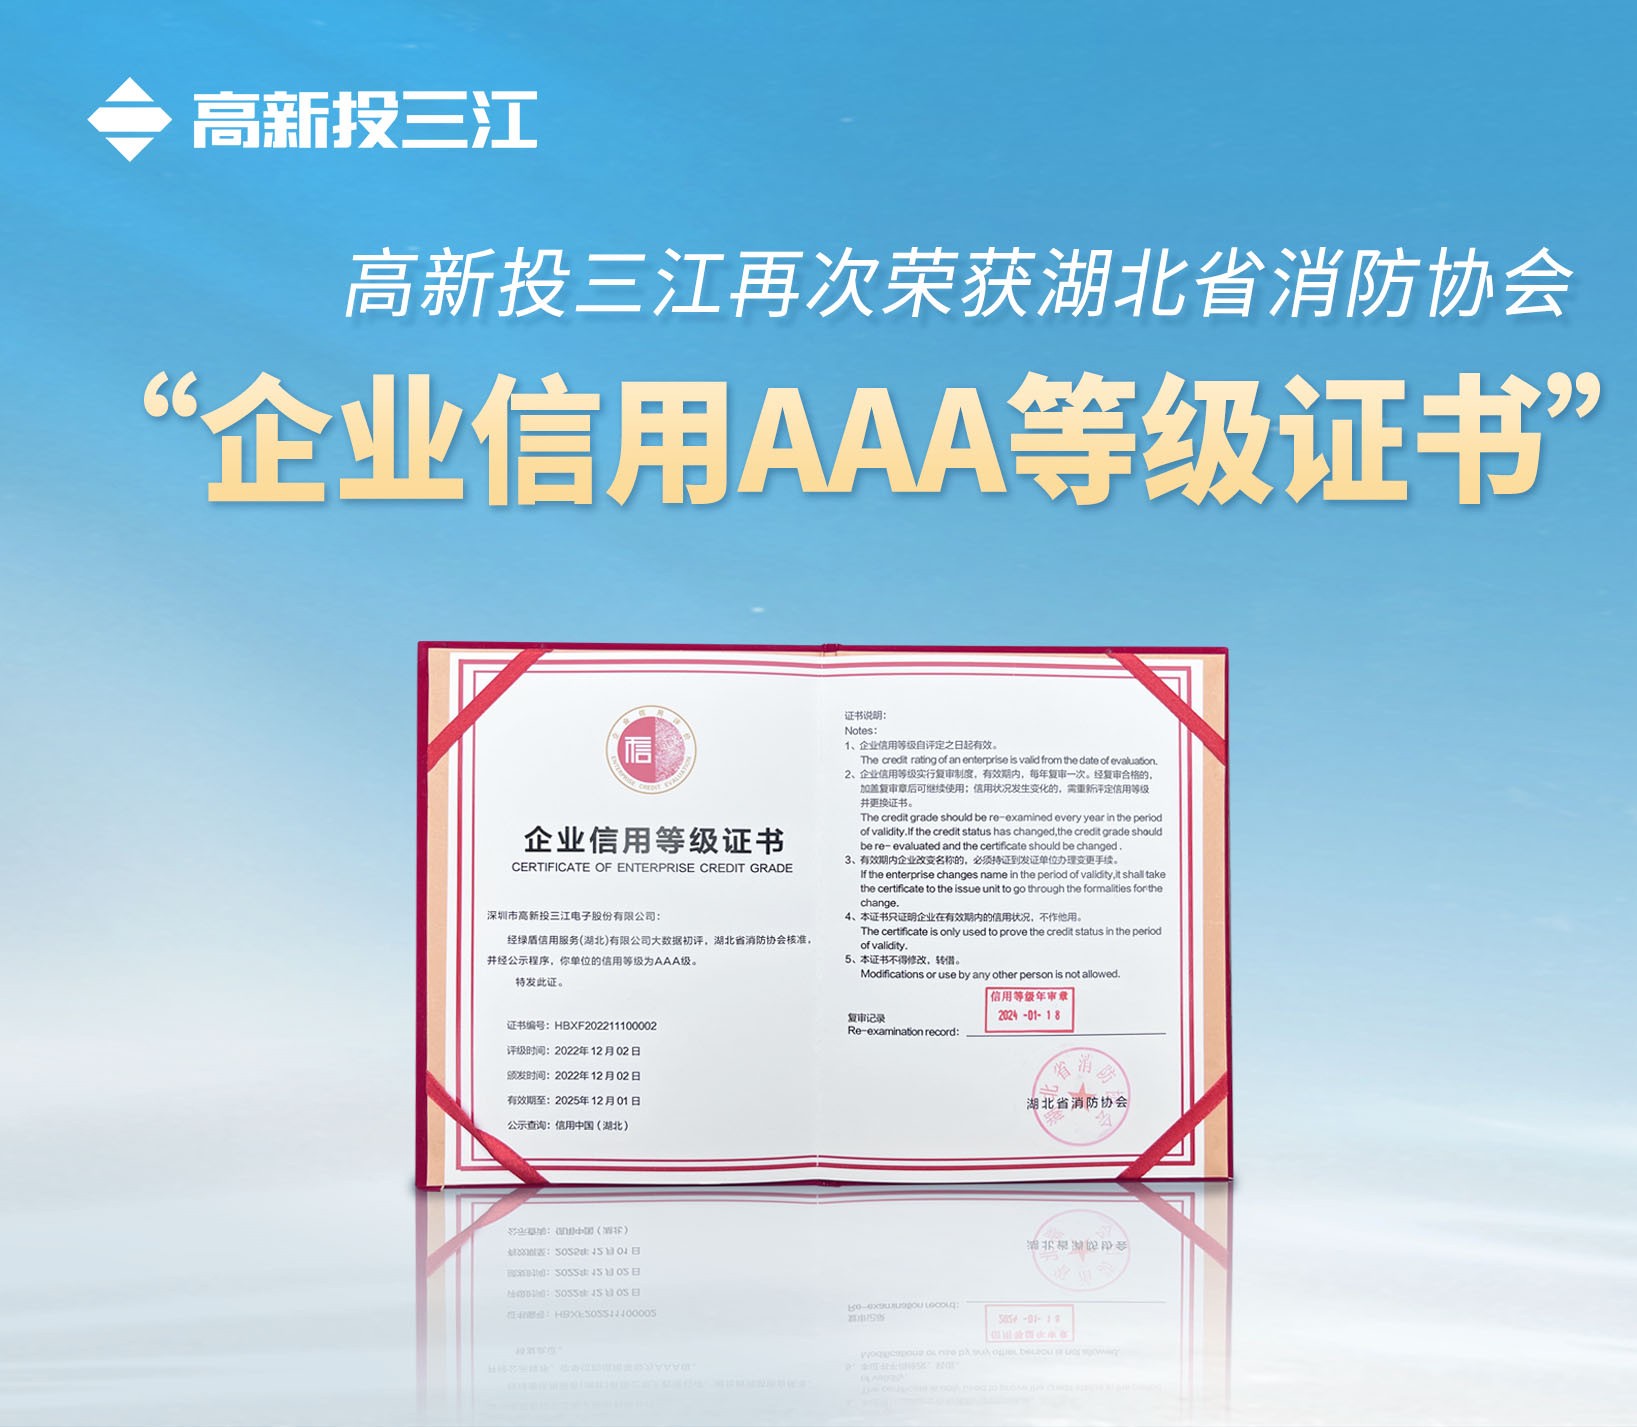 高新投三江再次荣获湖北省消防协会 “企业信用AAA等级证书”